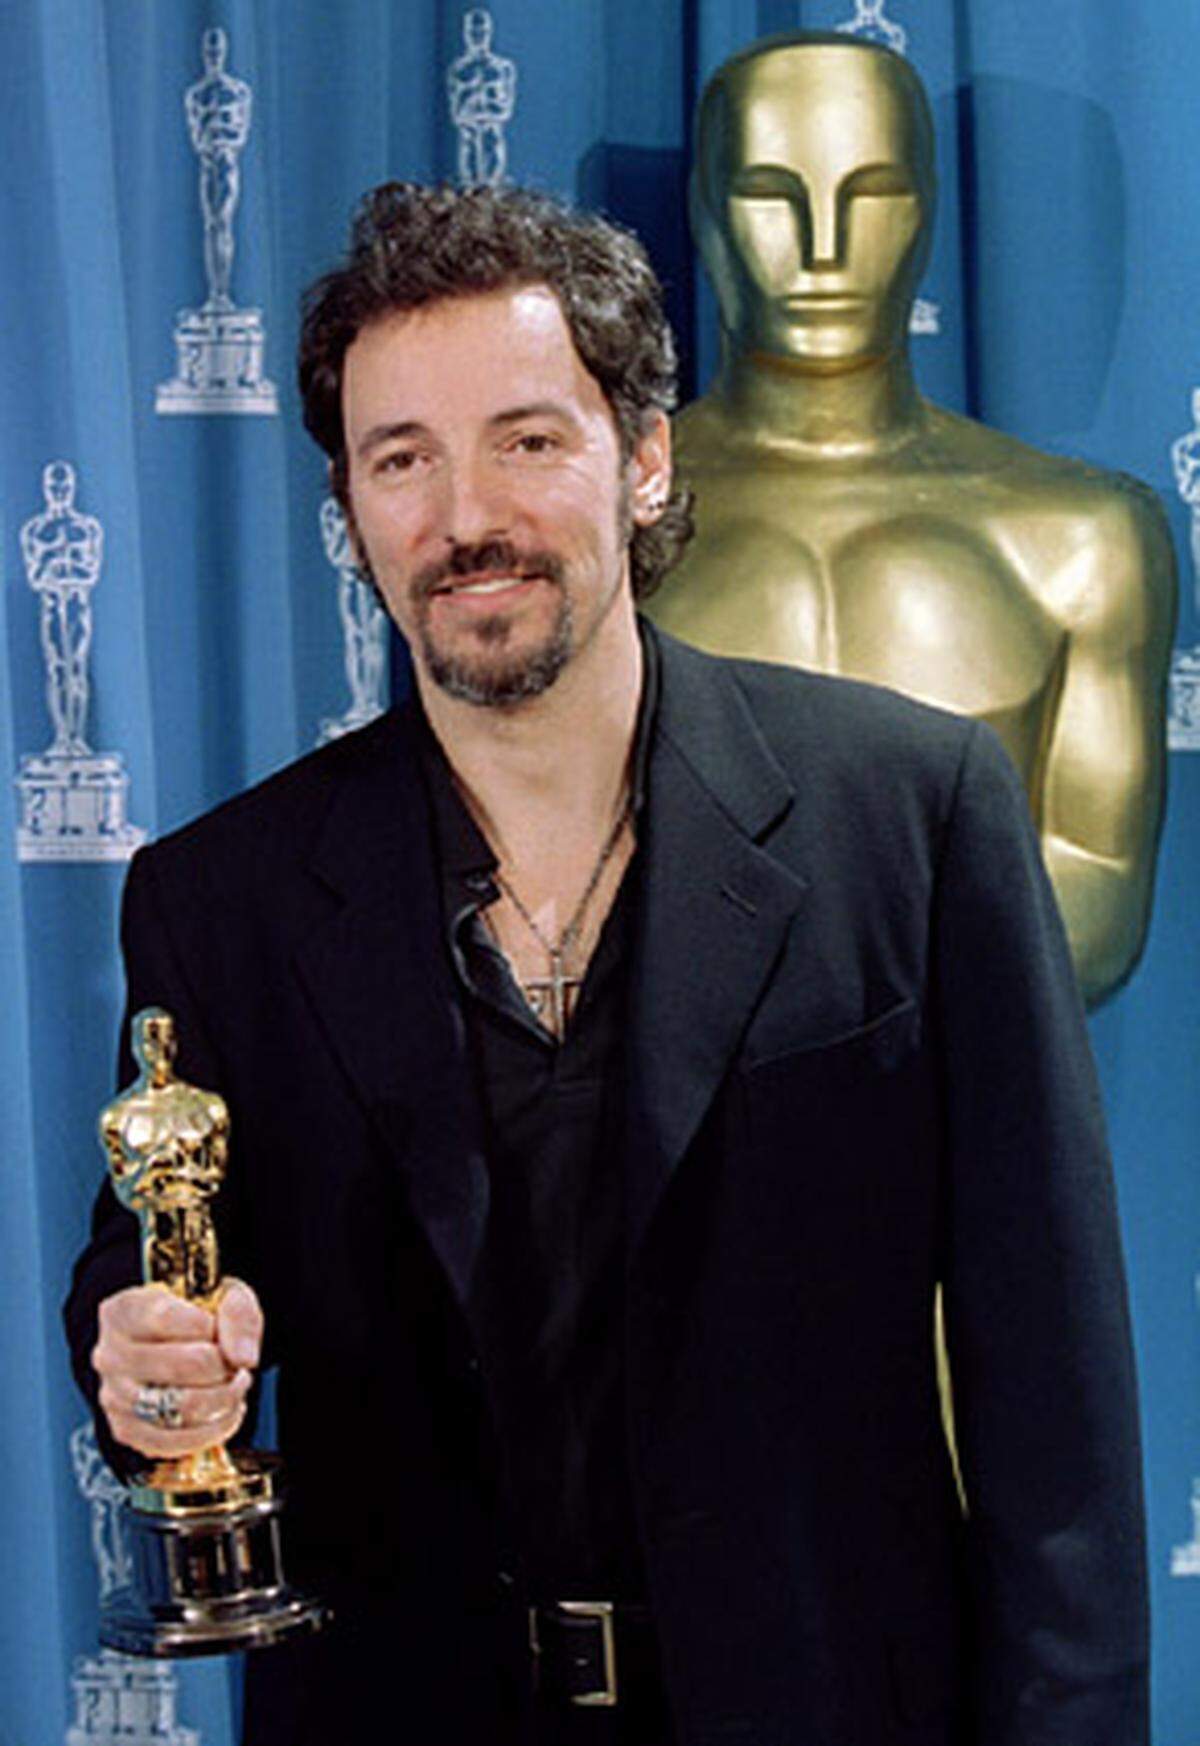 Für den Titelsong "Streets of Philadelphia" zu dem Homosexuellen-Drama "Philadelphia" erhielt er 1994 einen Oscar, eine zweite Nominierung erhielt Springsteen für seine "Dead Man Walking". Zuletzt schrieb er "The Wrestler", den Titelsong zu dem gleichnamigen Kinofilm mit Mickey Rourke.